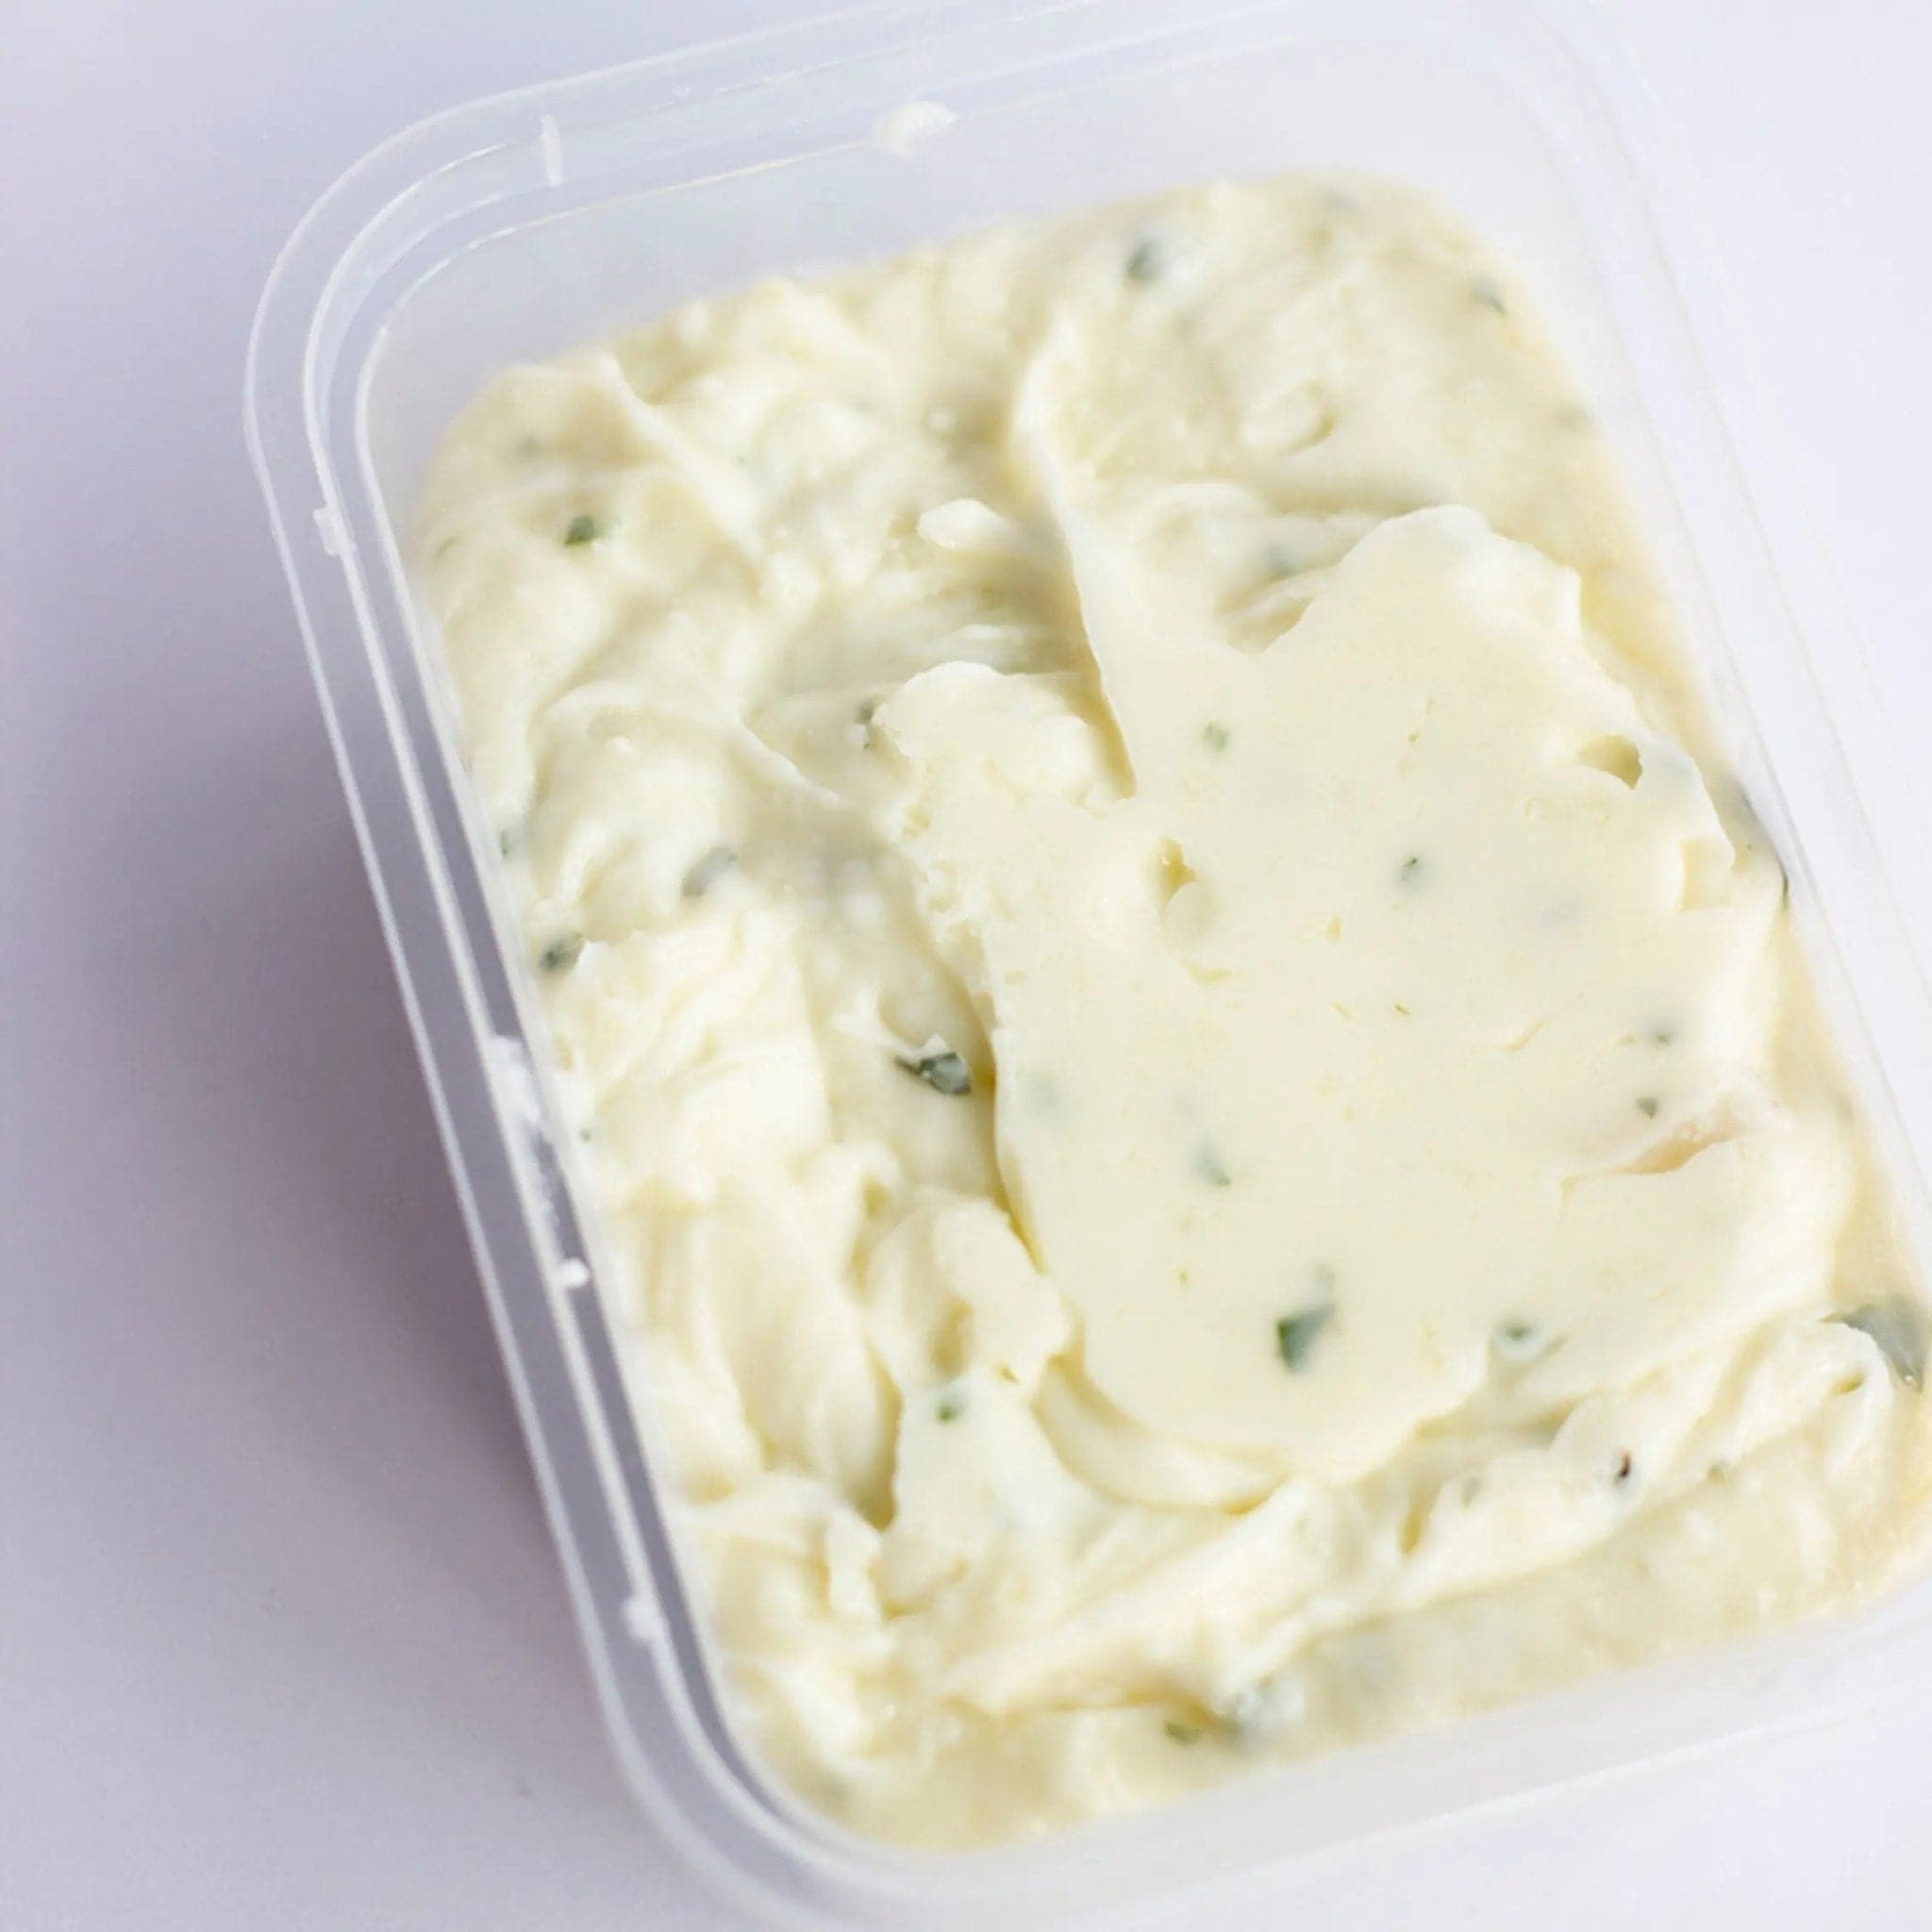 Herb & Garlic Butter - Artisan Cheese Factory